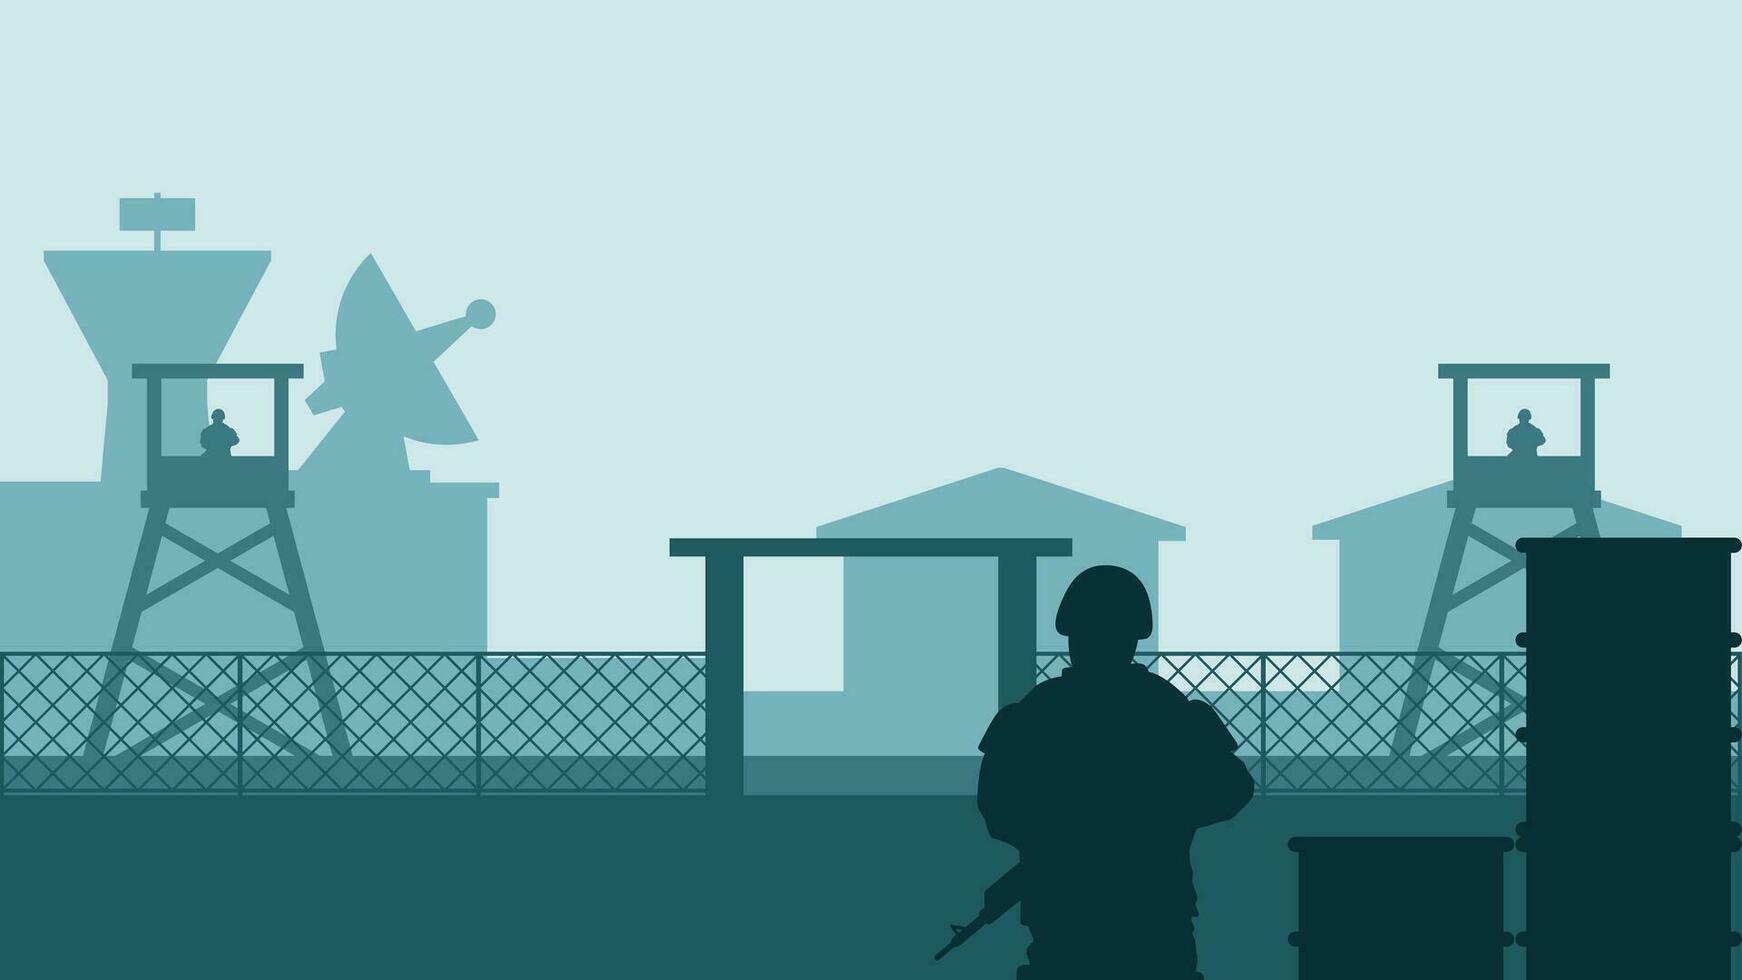 leger baseren landschap vector illustratie. silhouet van soldaat Bij leger baseren met uitkijktoren en kazerne. leger landschap voor achtergrond, behang of landen bladzijde